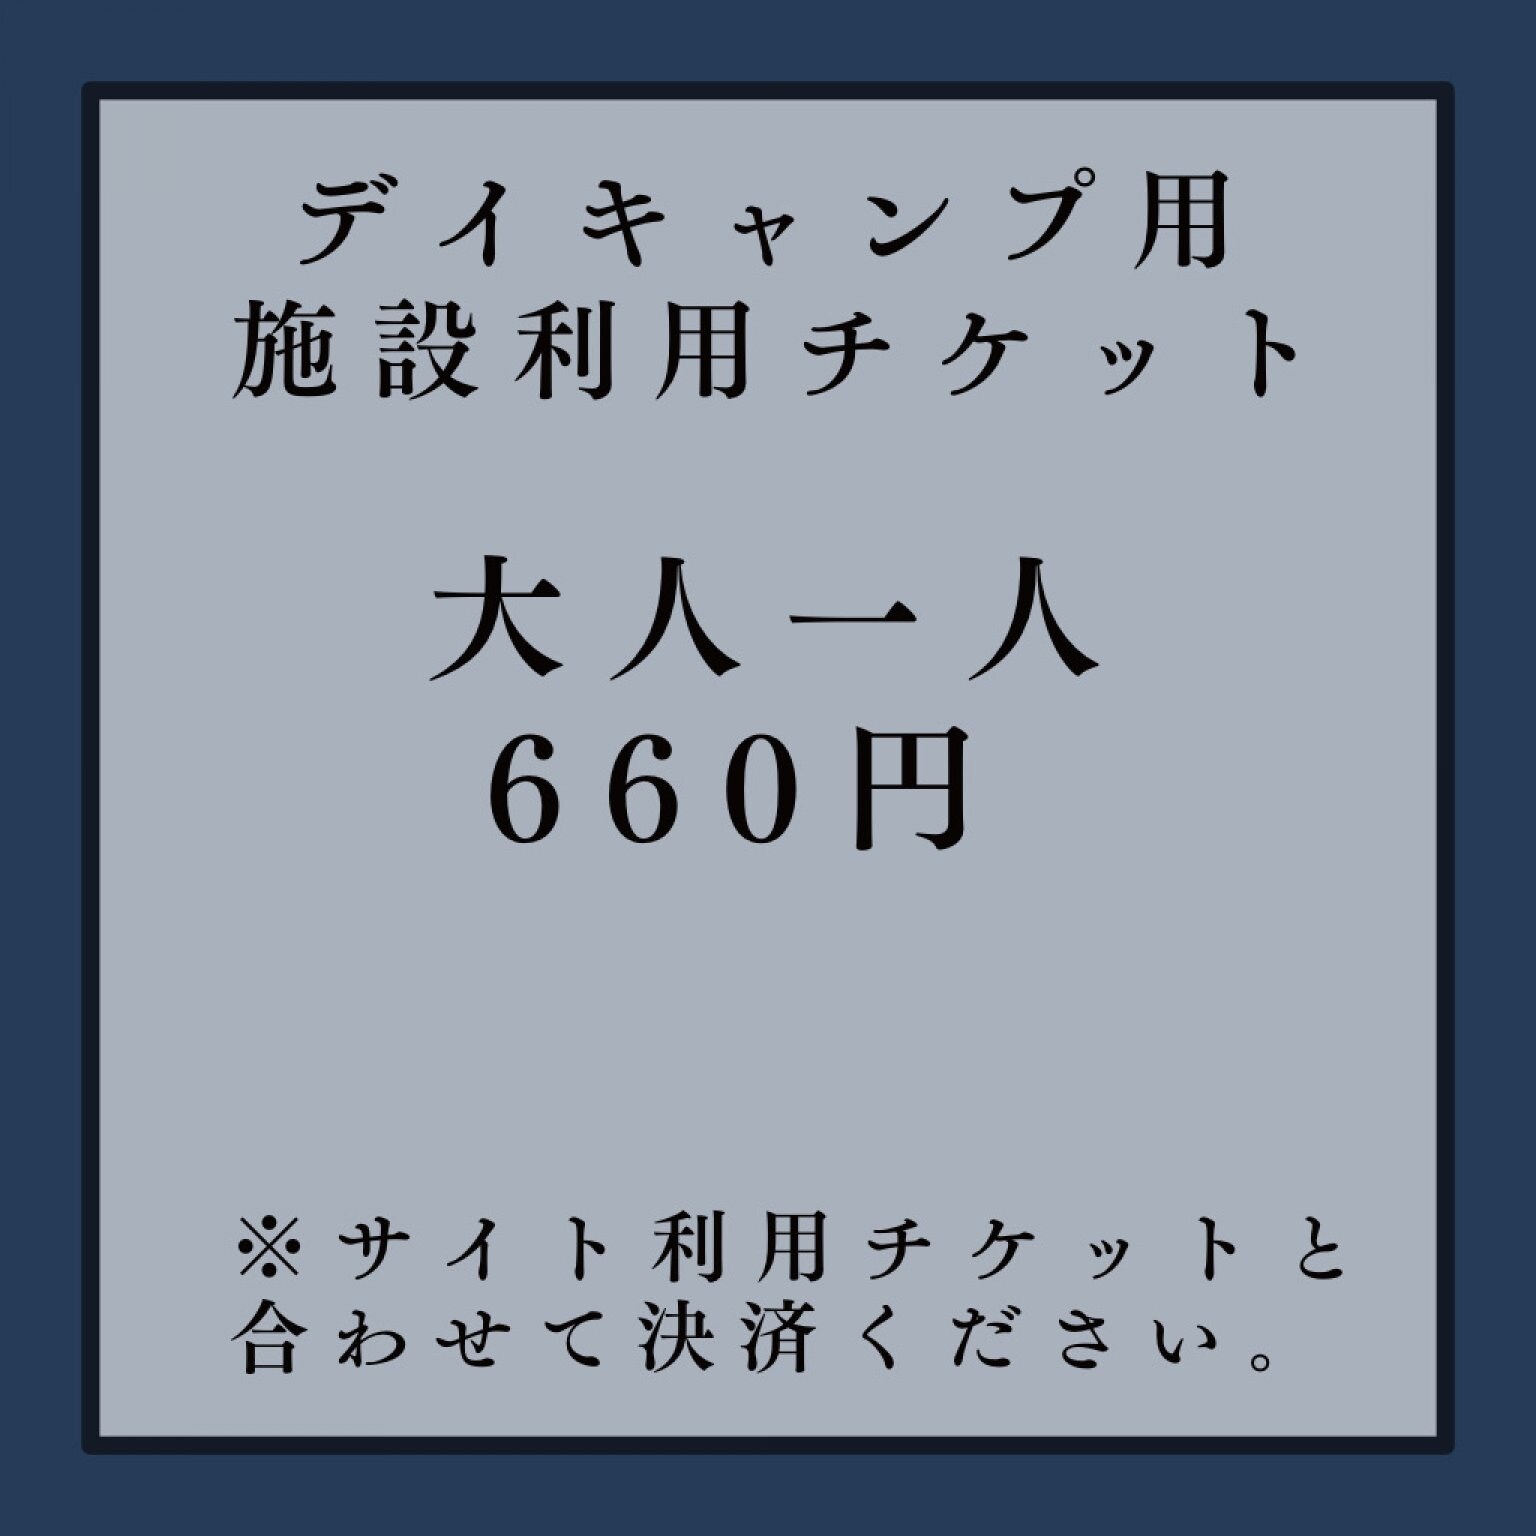 【大人】サイト利用デイキャンプ用|施設利用料チケット(660円/一人)